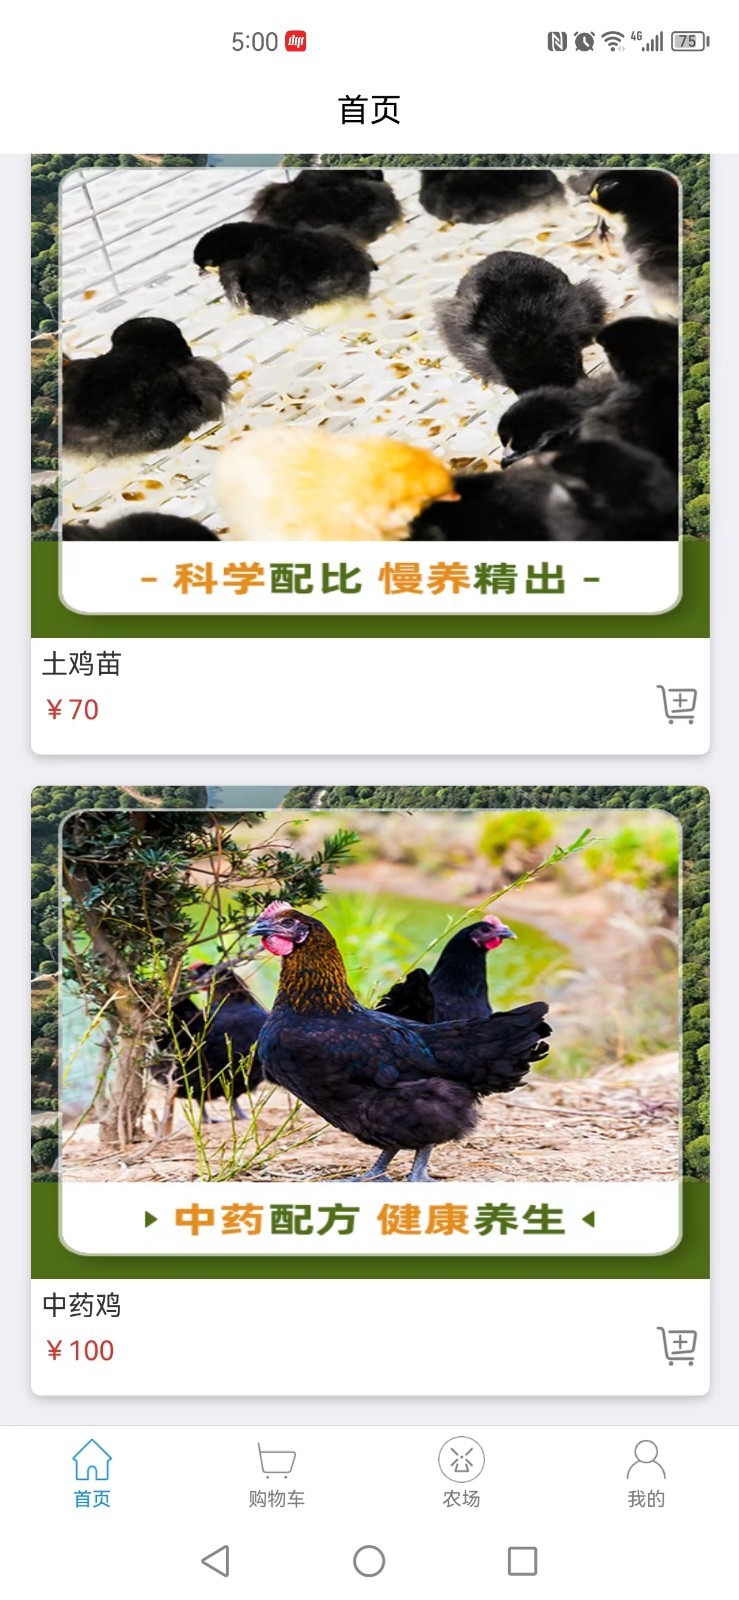 盛裕丰养鸡投资官方版下载图片2